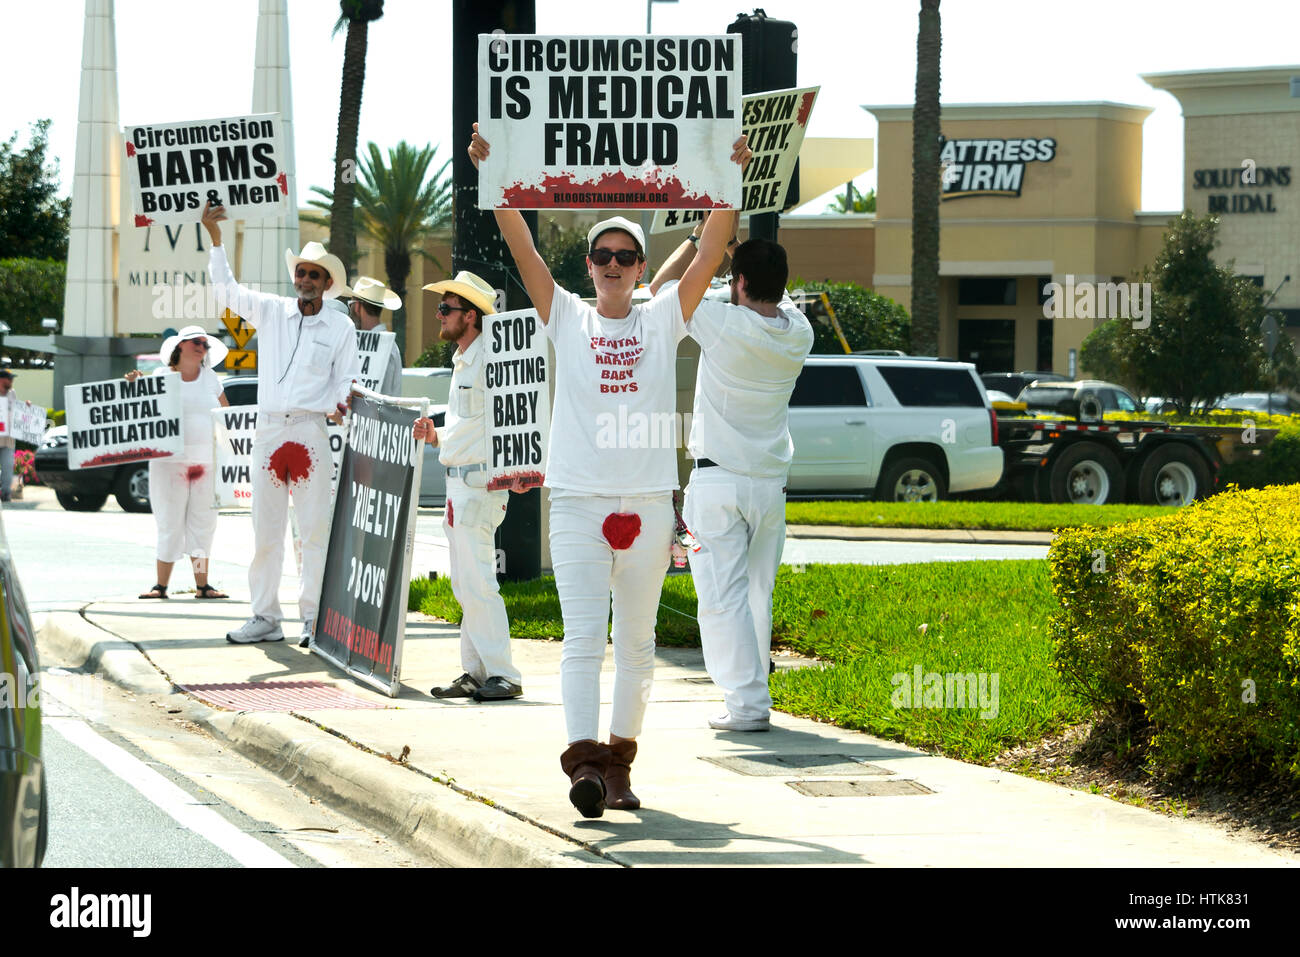 Orlando, Florida - El 9 de marzo de 2017: La protesta pública de la circuncisión en el Millenia Mall entrada este fin de semana en Orlando, Florida, el 9 de marzo de 2017 Foto de stock